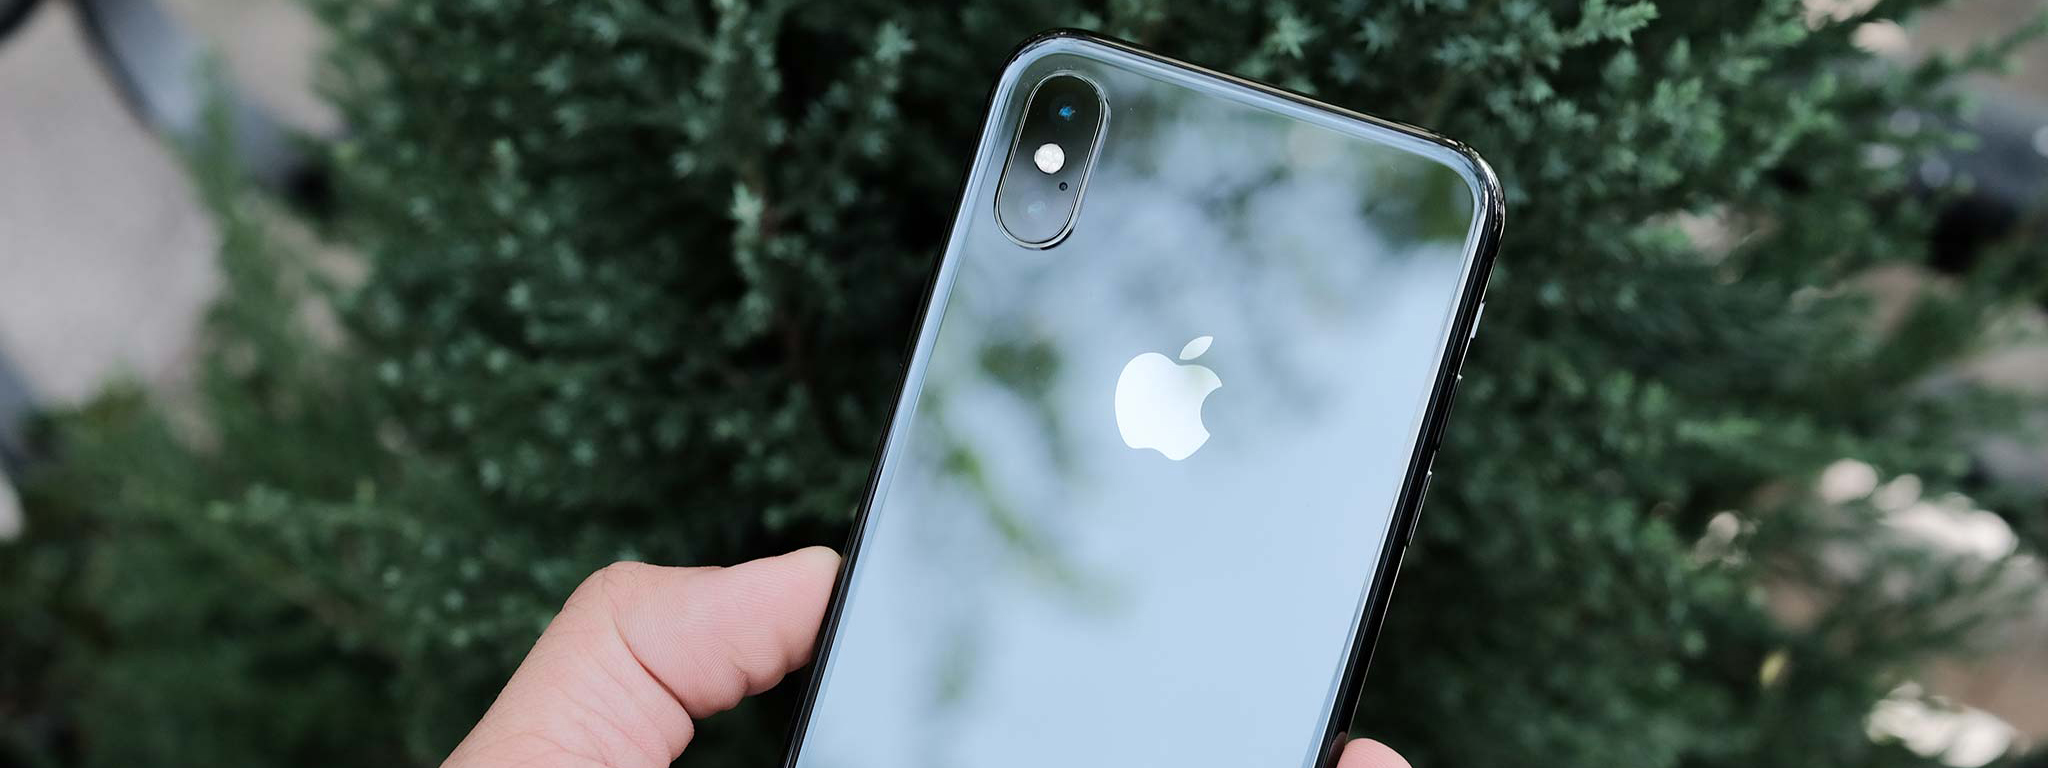 Tim Cook: Người dùng sắp có thể tắt chế độ giảm hiệu năng iPhone vì chai pin trong bản iOS sắp tới